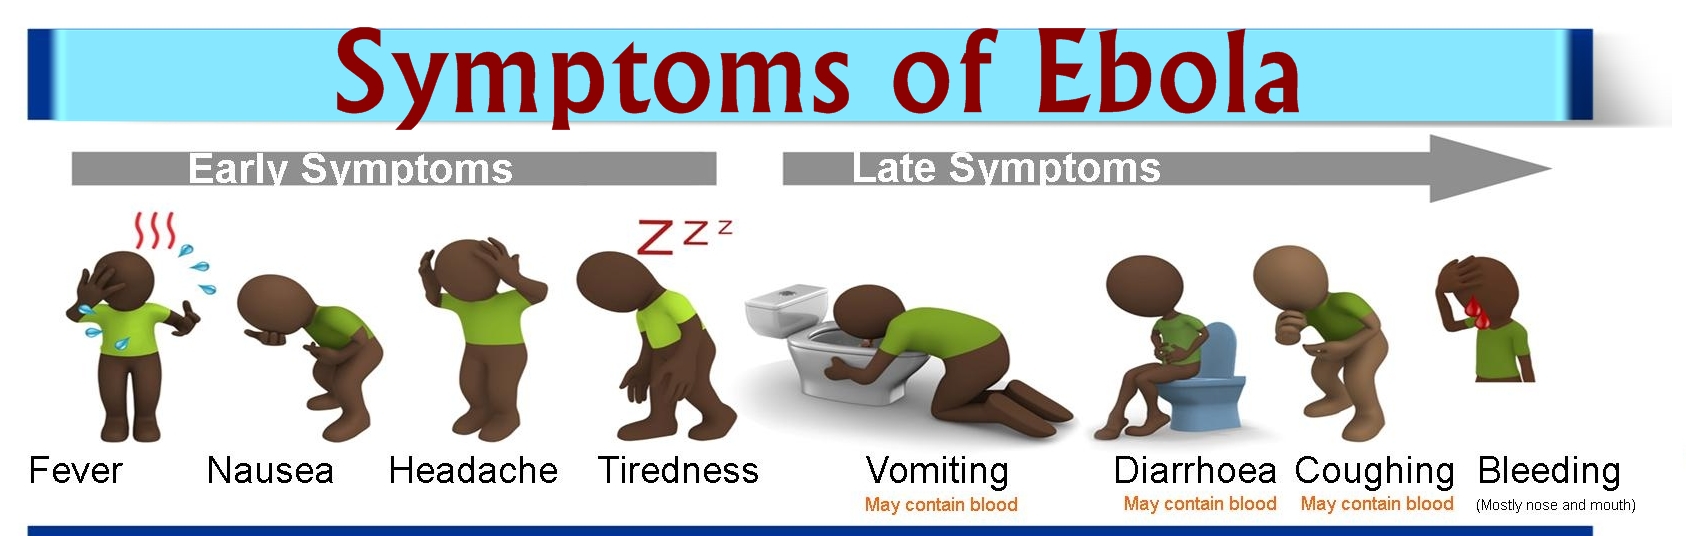 ebola-symptoms-1-crop-2.jpg